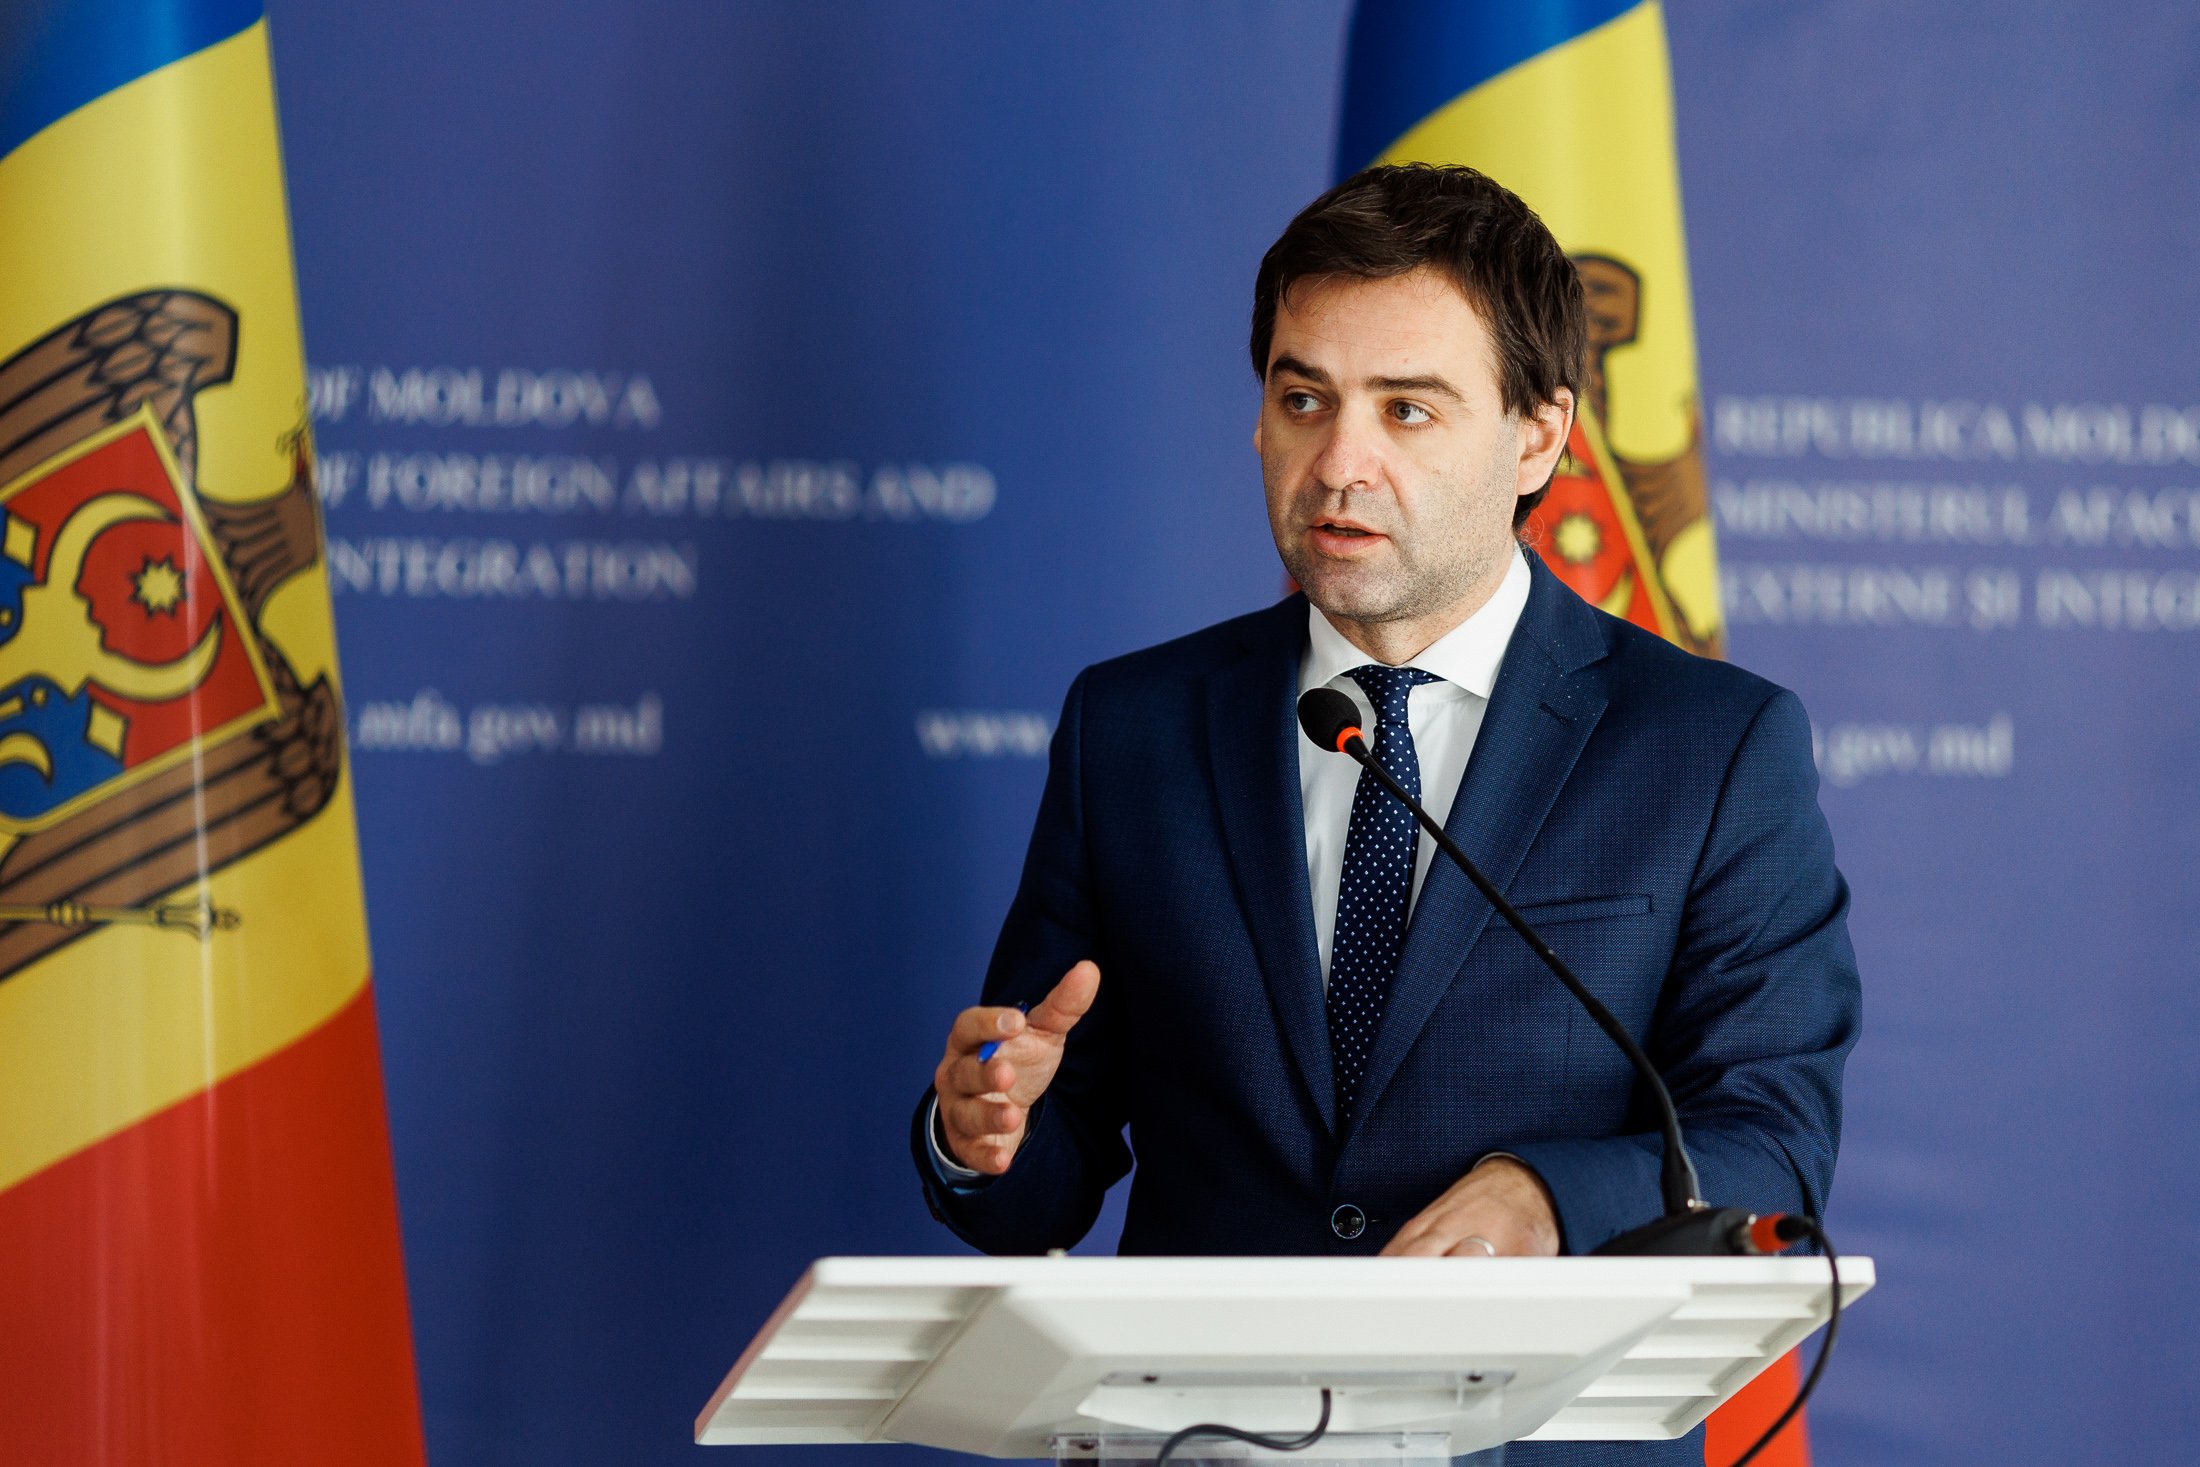  Ministrul de externe al Rep. Moldova: „Avem nevoie urgentă de o interconectare electrică cu România”